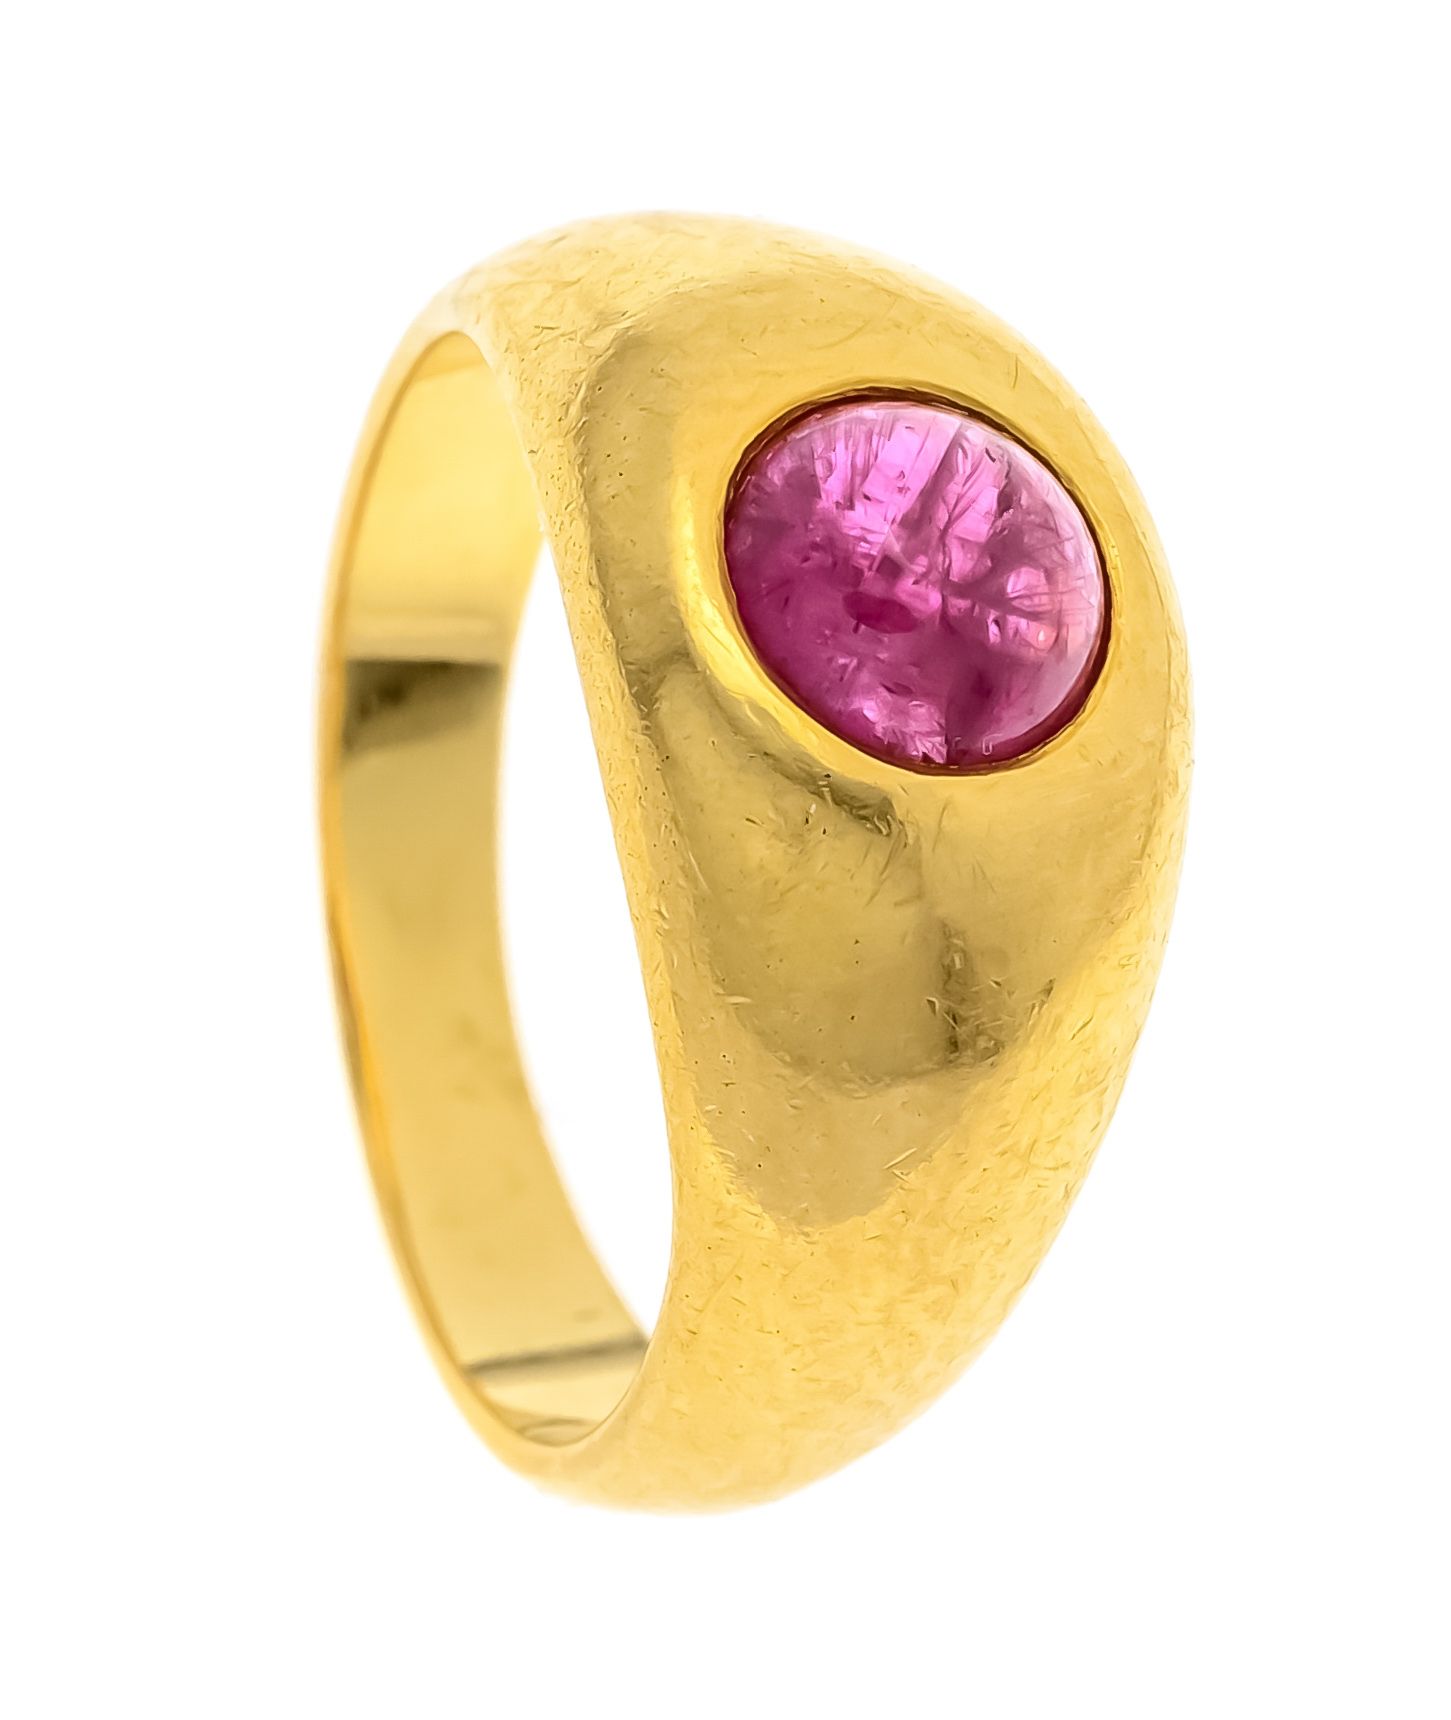 Null 红宝石戒指GG 750/000，带一颗凸圆形红宝石，5.5毫米，红色，半透明，RG 45，5.0克